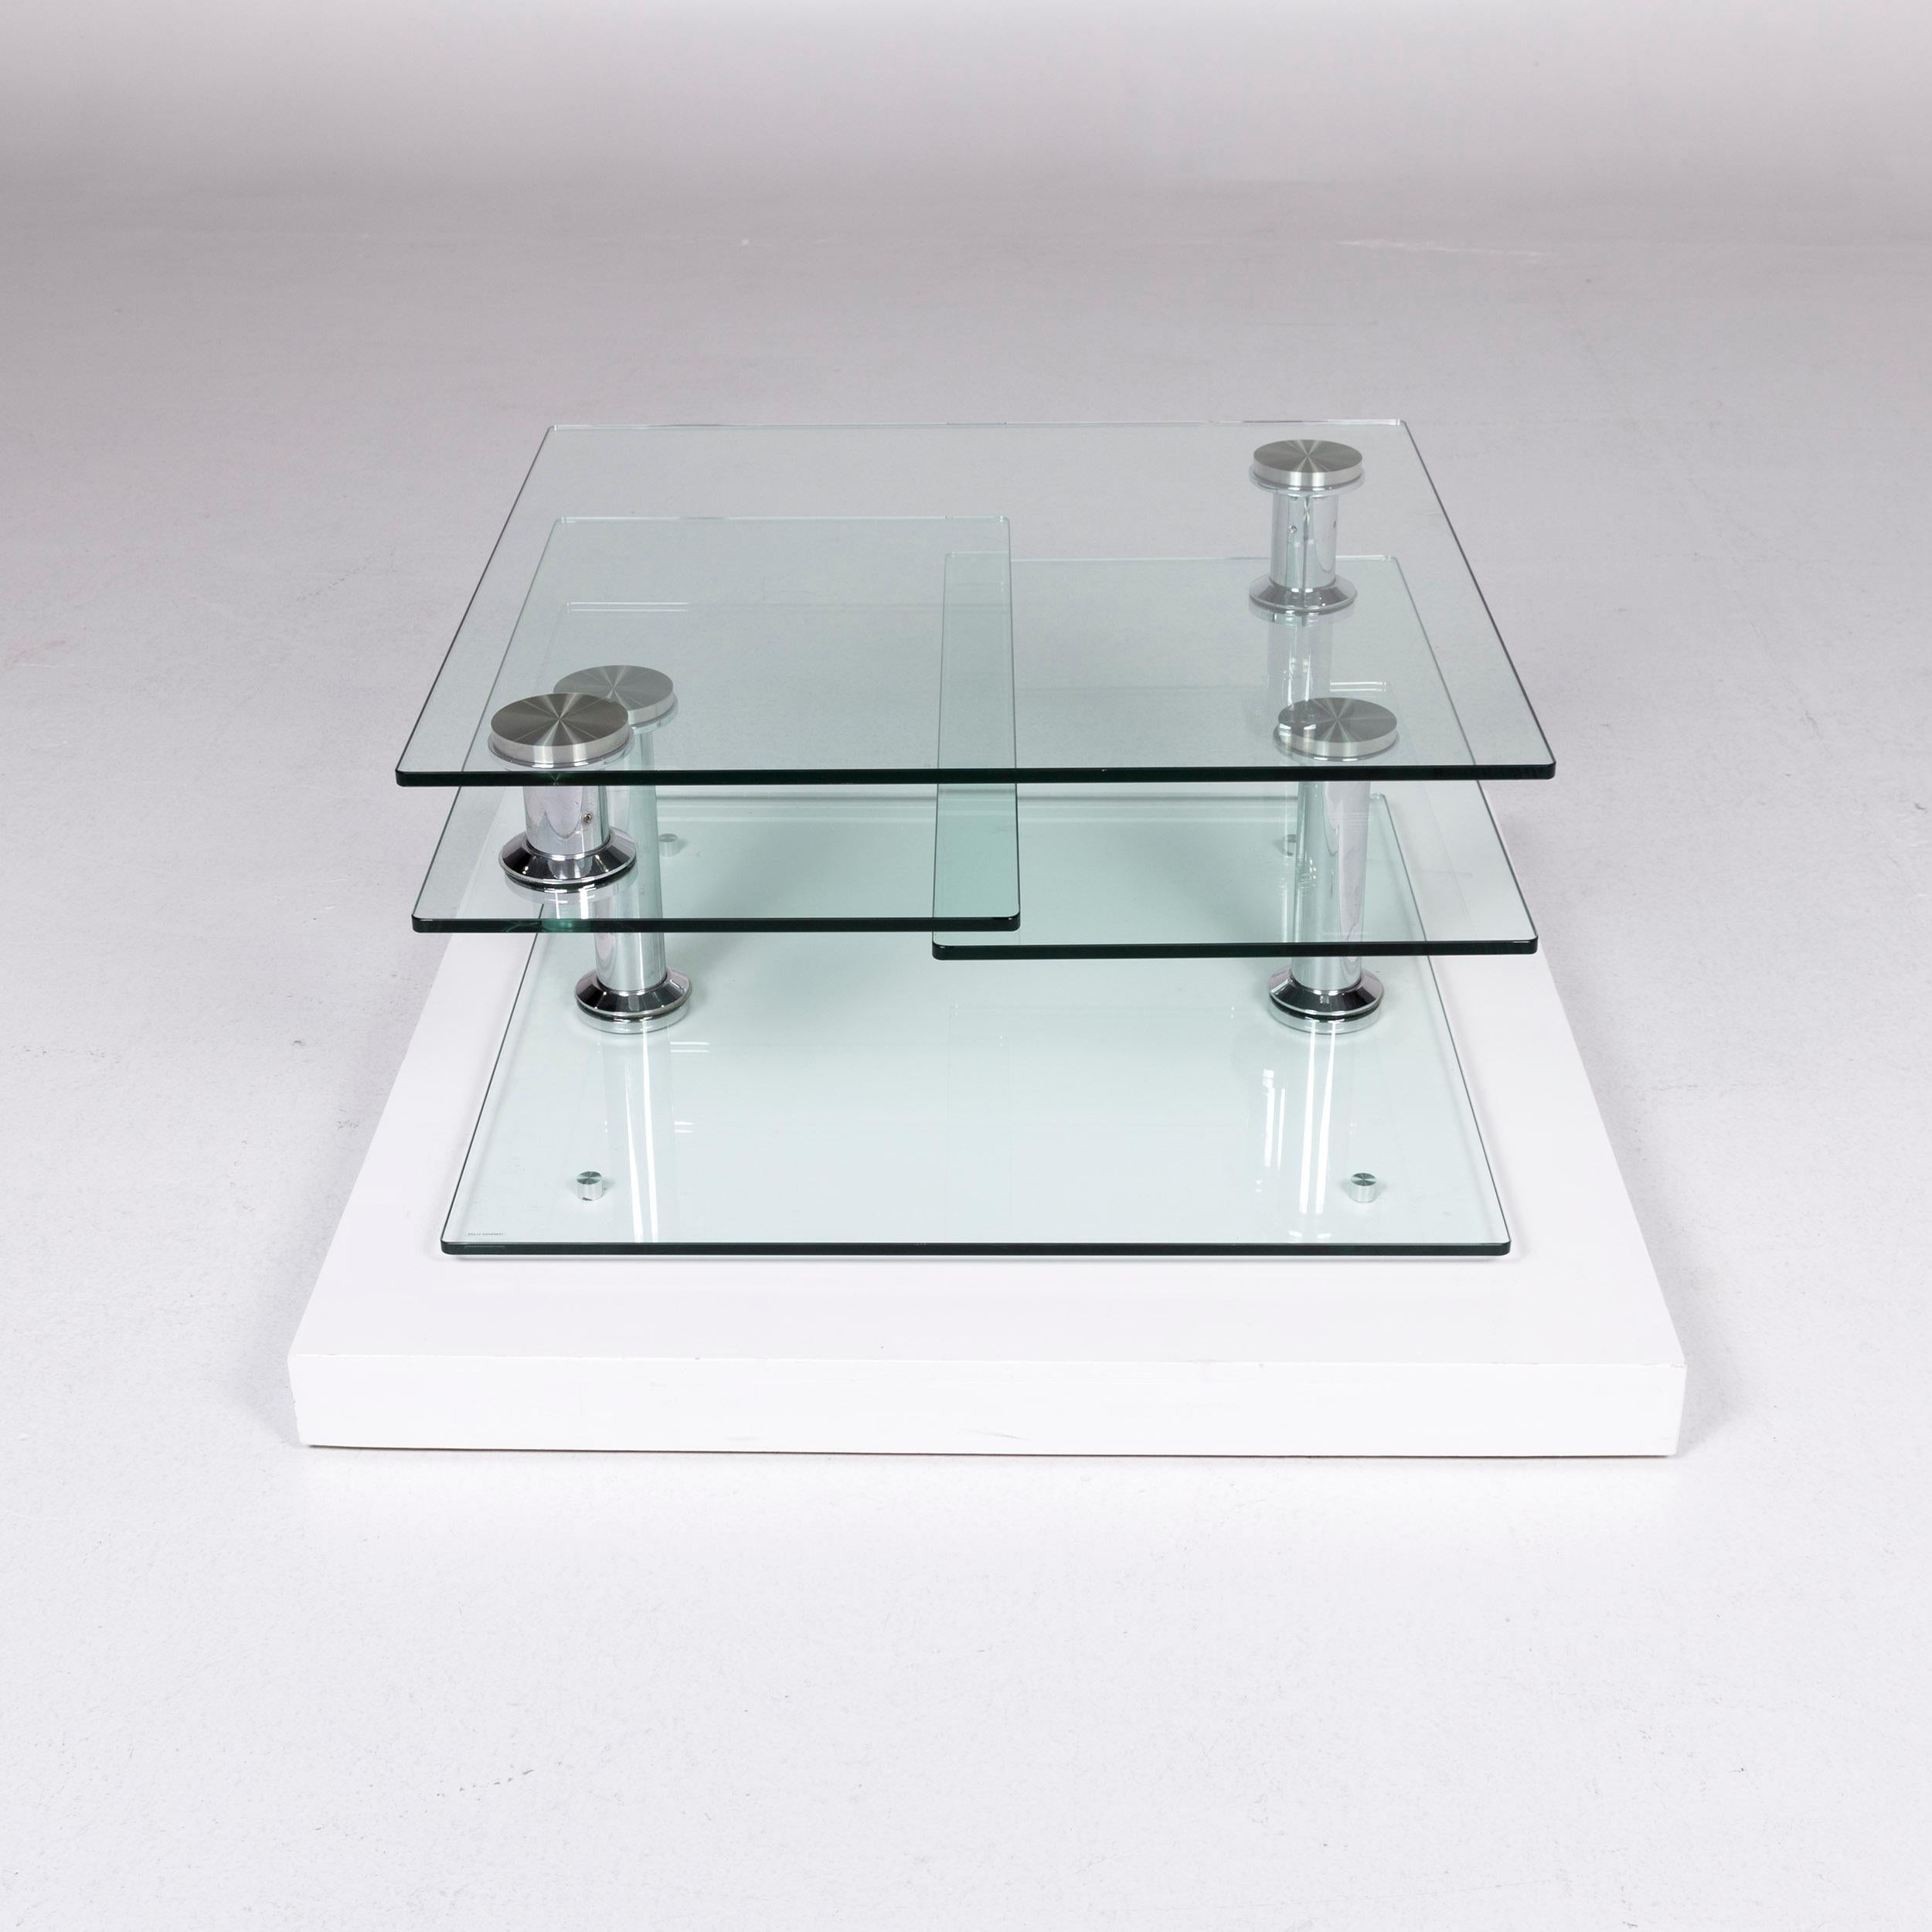 Hülsta Glass Couchtisch Silber Chrome Function Tisch 4